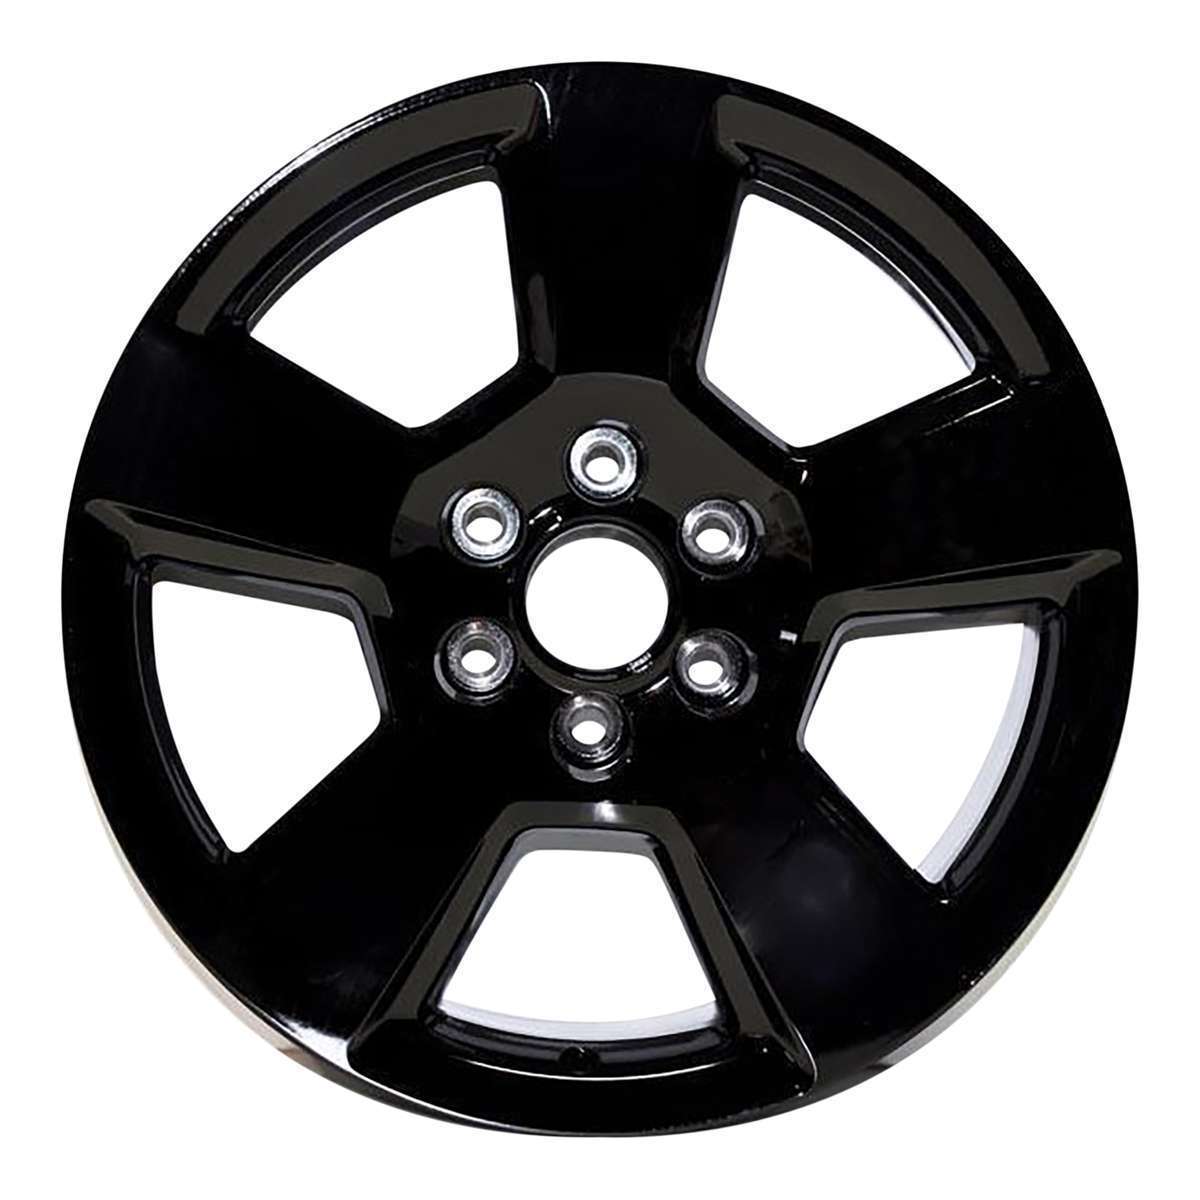 2014 Chevrolet Silverado 1500 New 20" Replacement Wheel Rim RW5652B